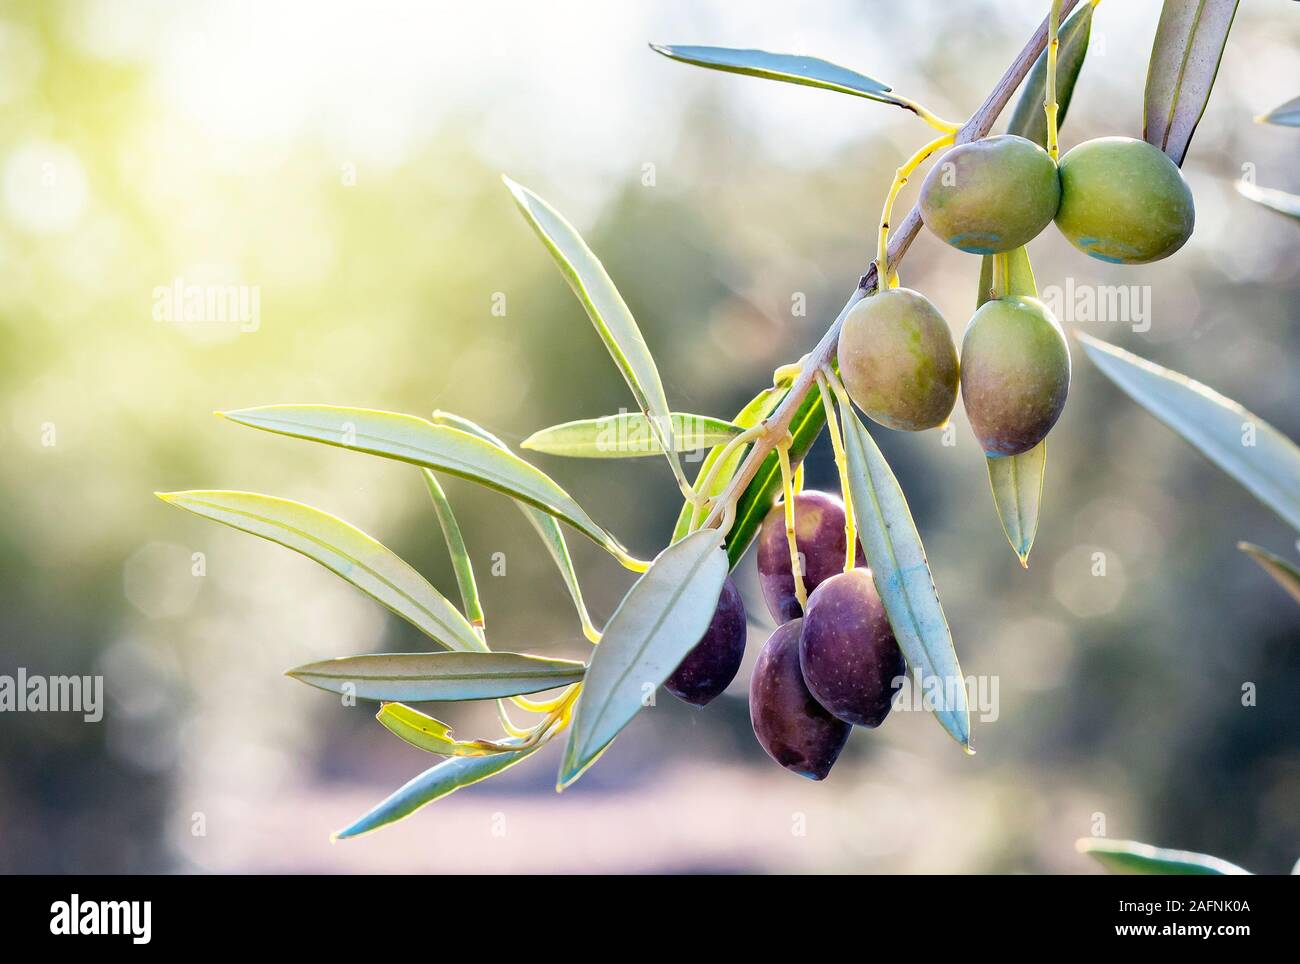 Branche d'olivier dans son arbre presque muets et sur le point d'être recueillis pour obtenir de l'huile. Banque D'Images